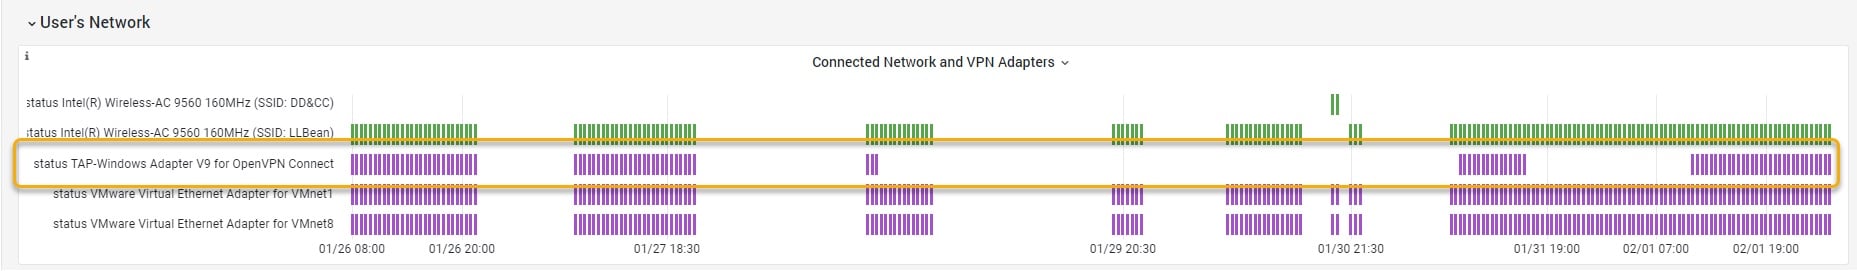 OfficeExpert | Rede conectada e adaptadores VPN